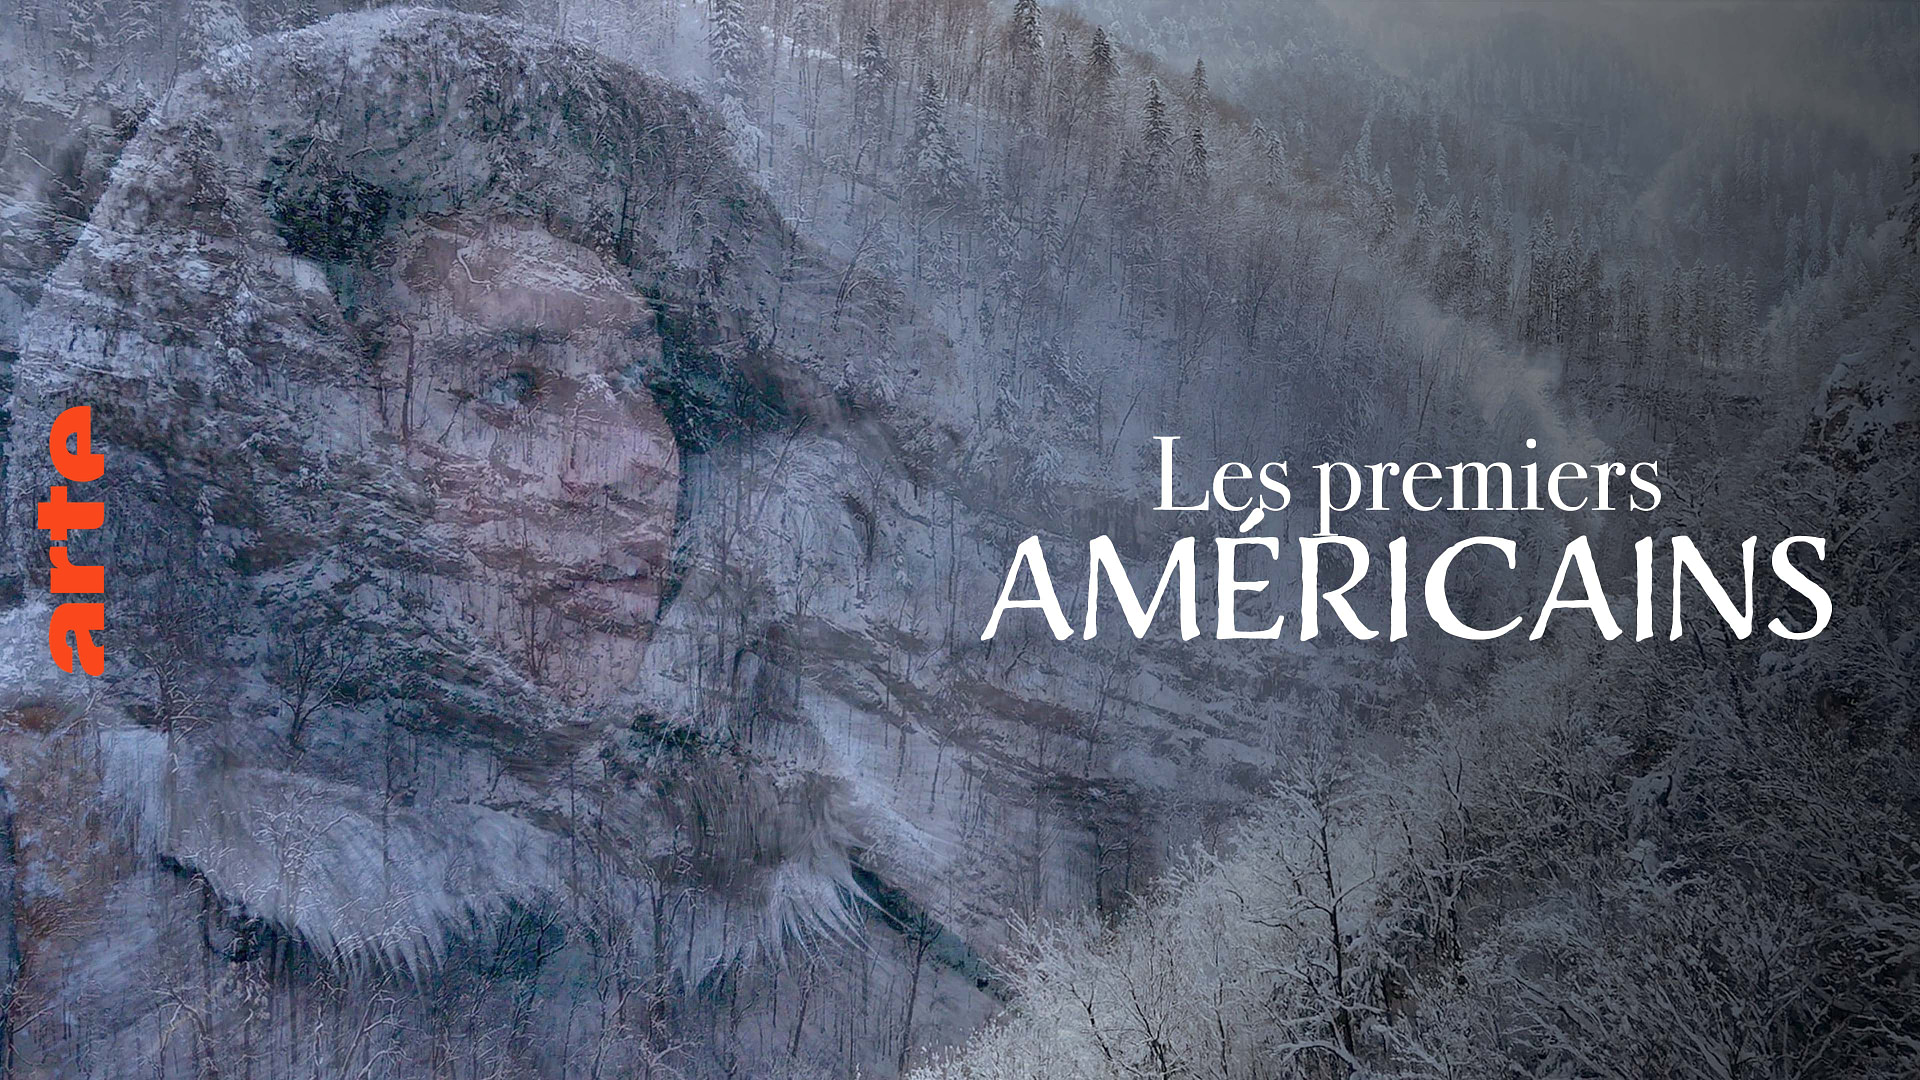 América: La nueva historia de los primeros hombres – Ver el documental completo